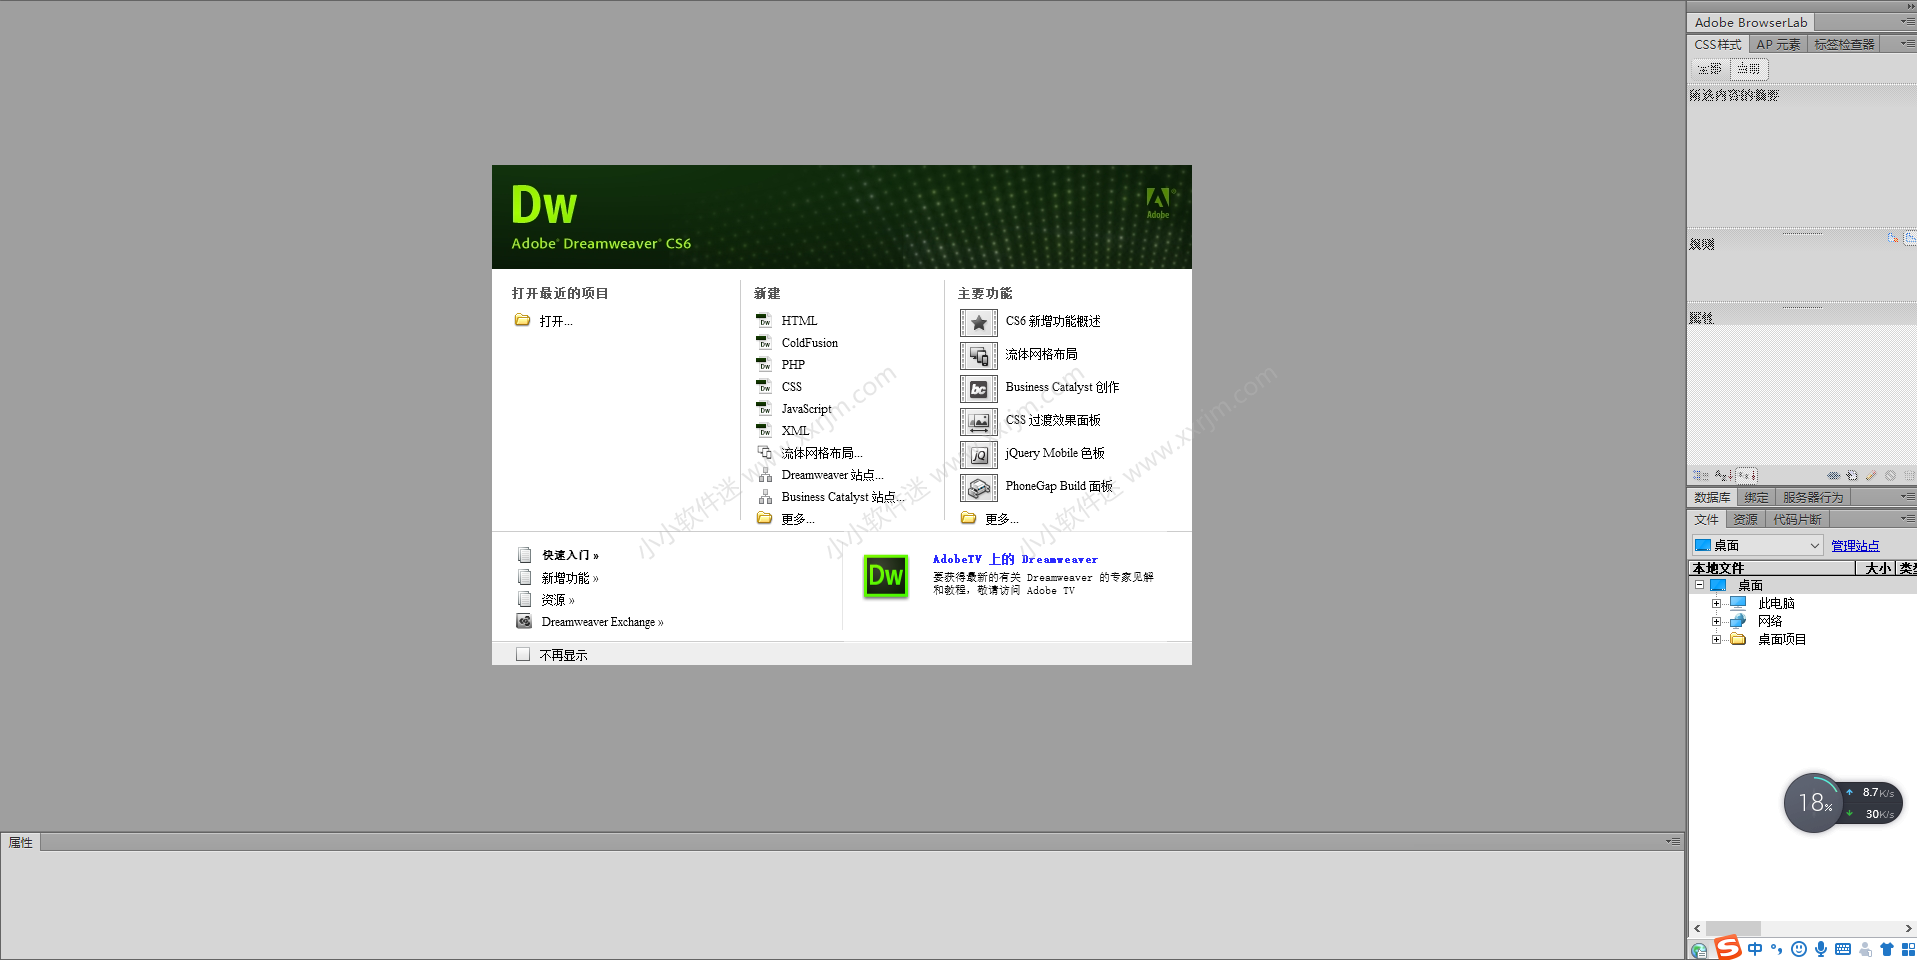 Dreamweaver CS6绿色精简版下载地址和安装教程